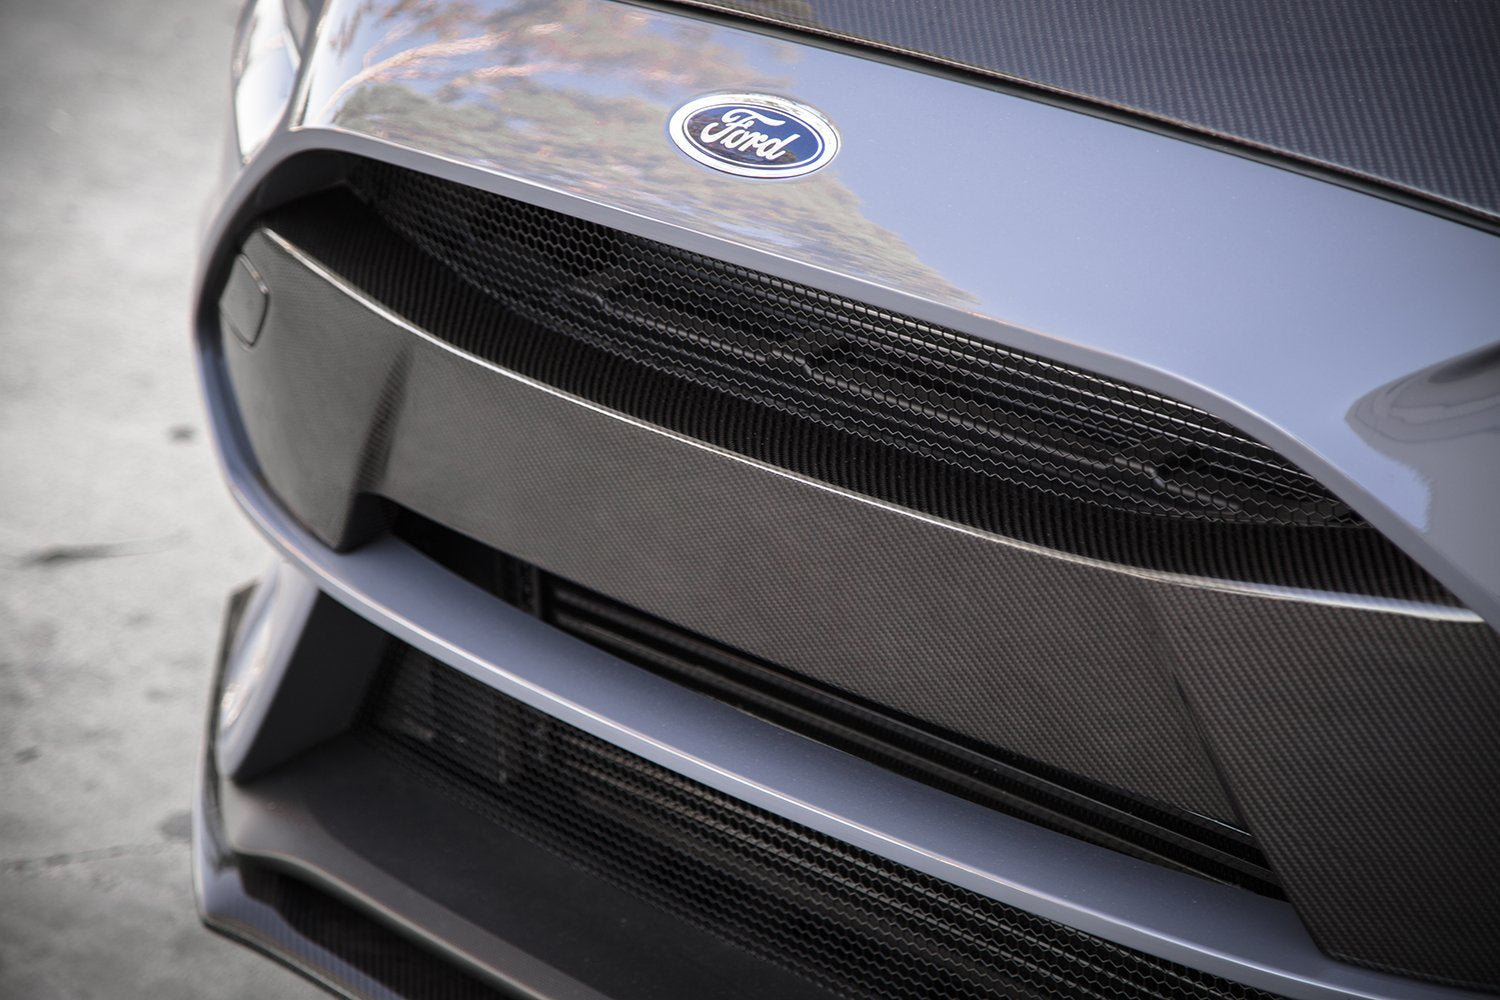 Inserto paraurti anteriore in fibra di carbonio Anderson Composites per Ford 2016-18 Focus RS